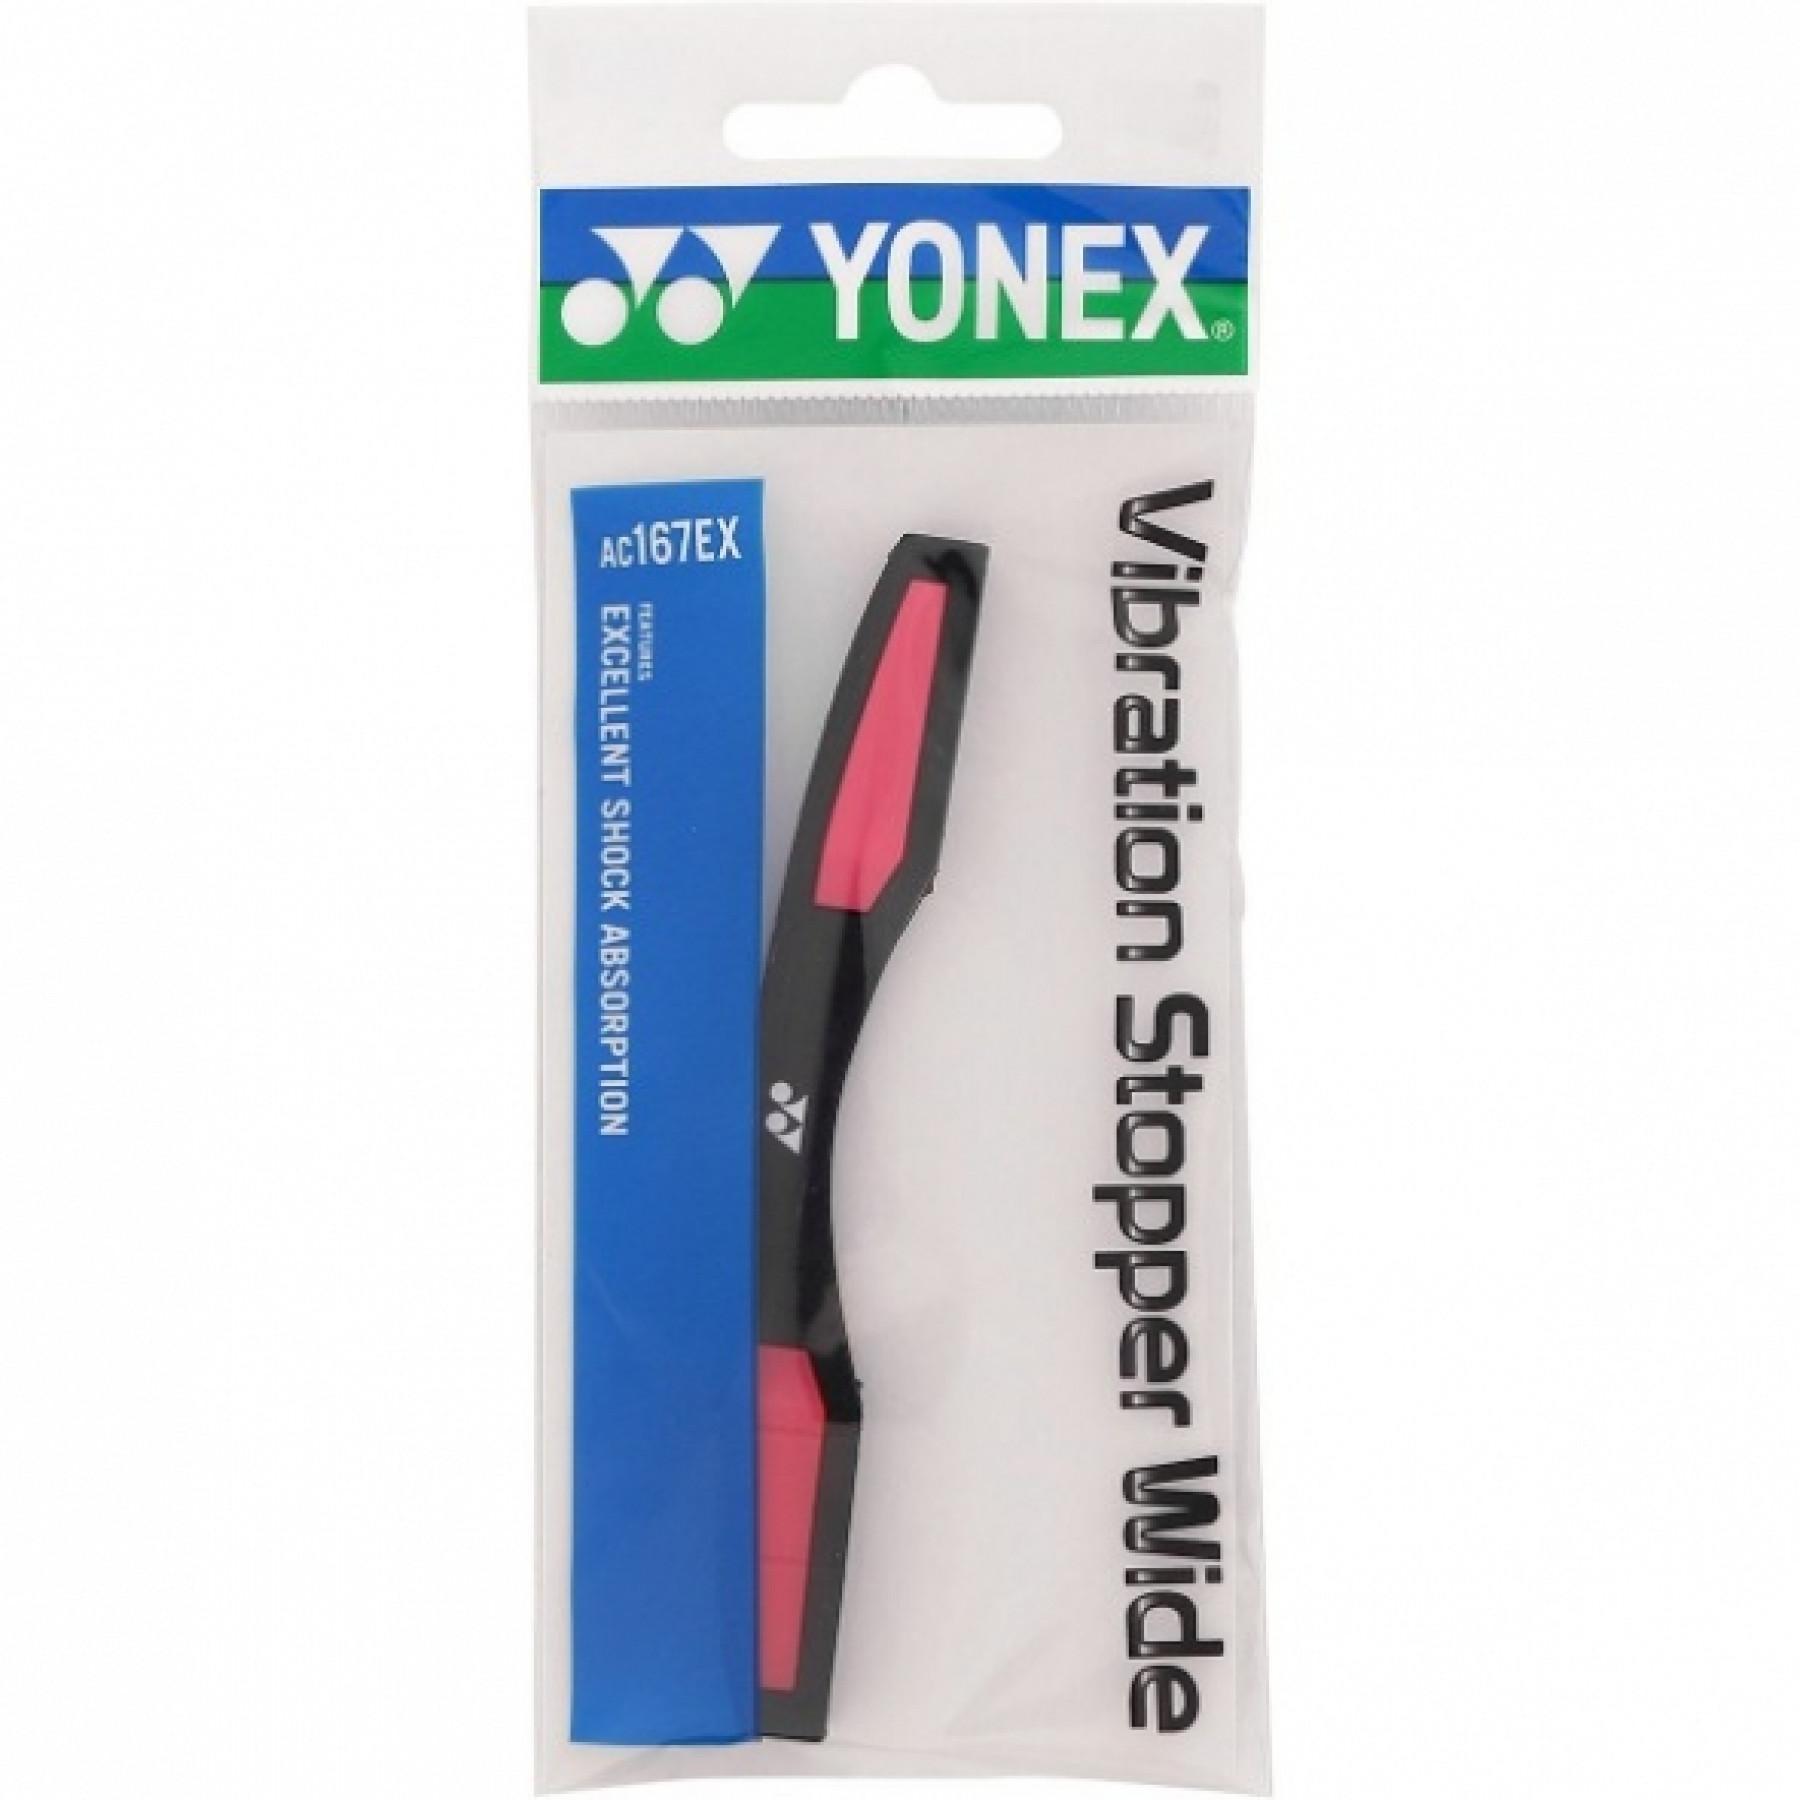 Antivibrador Yonex AC167EX